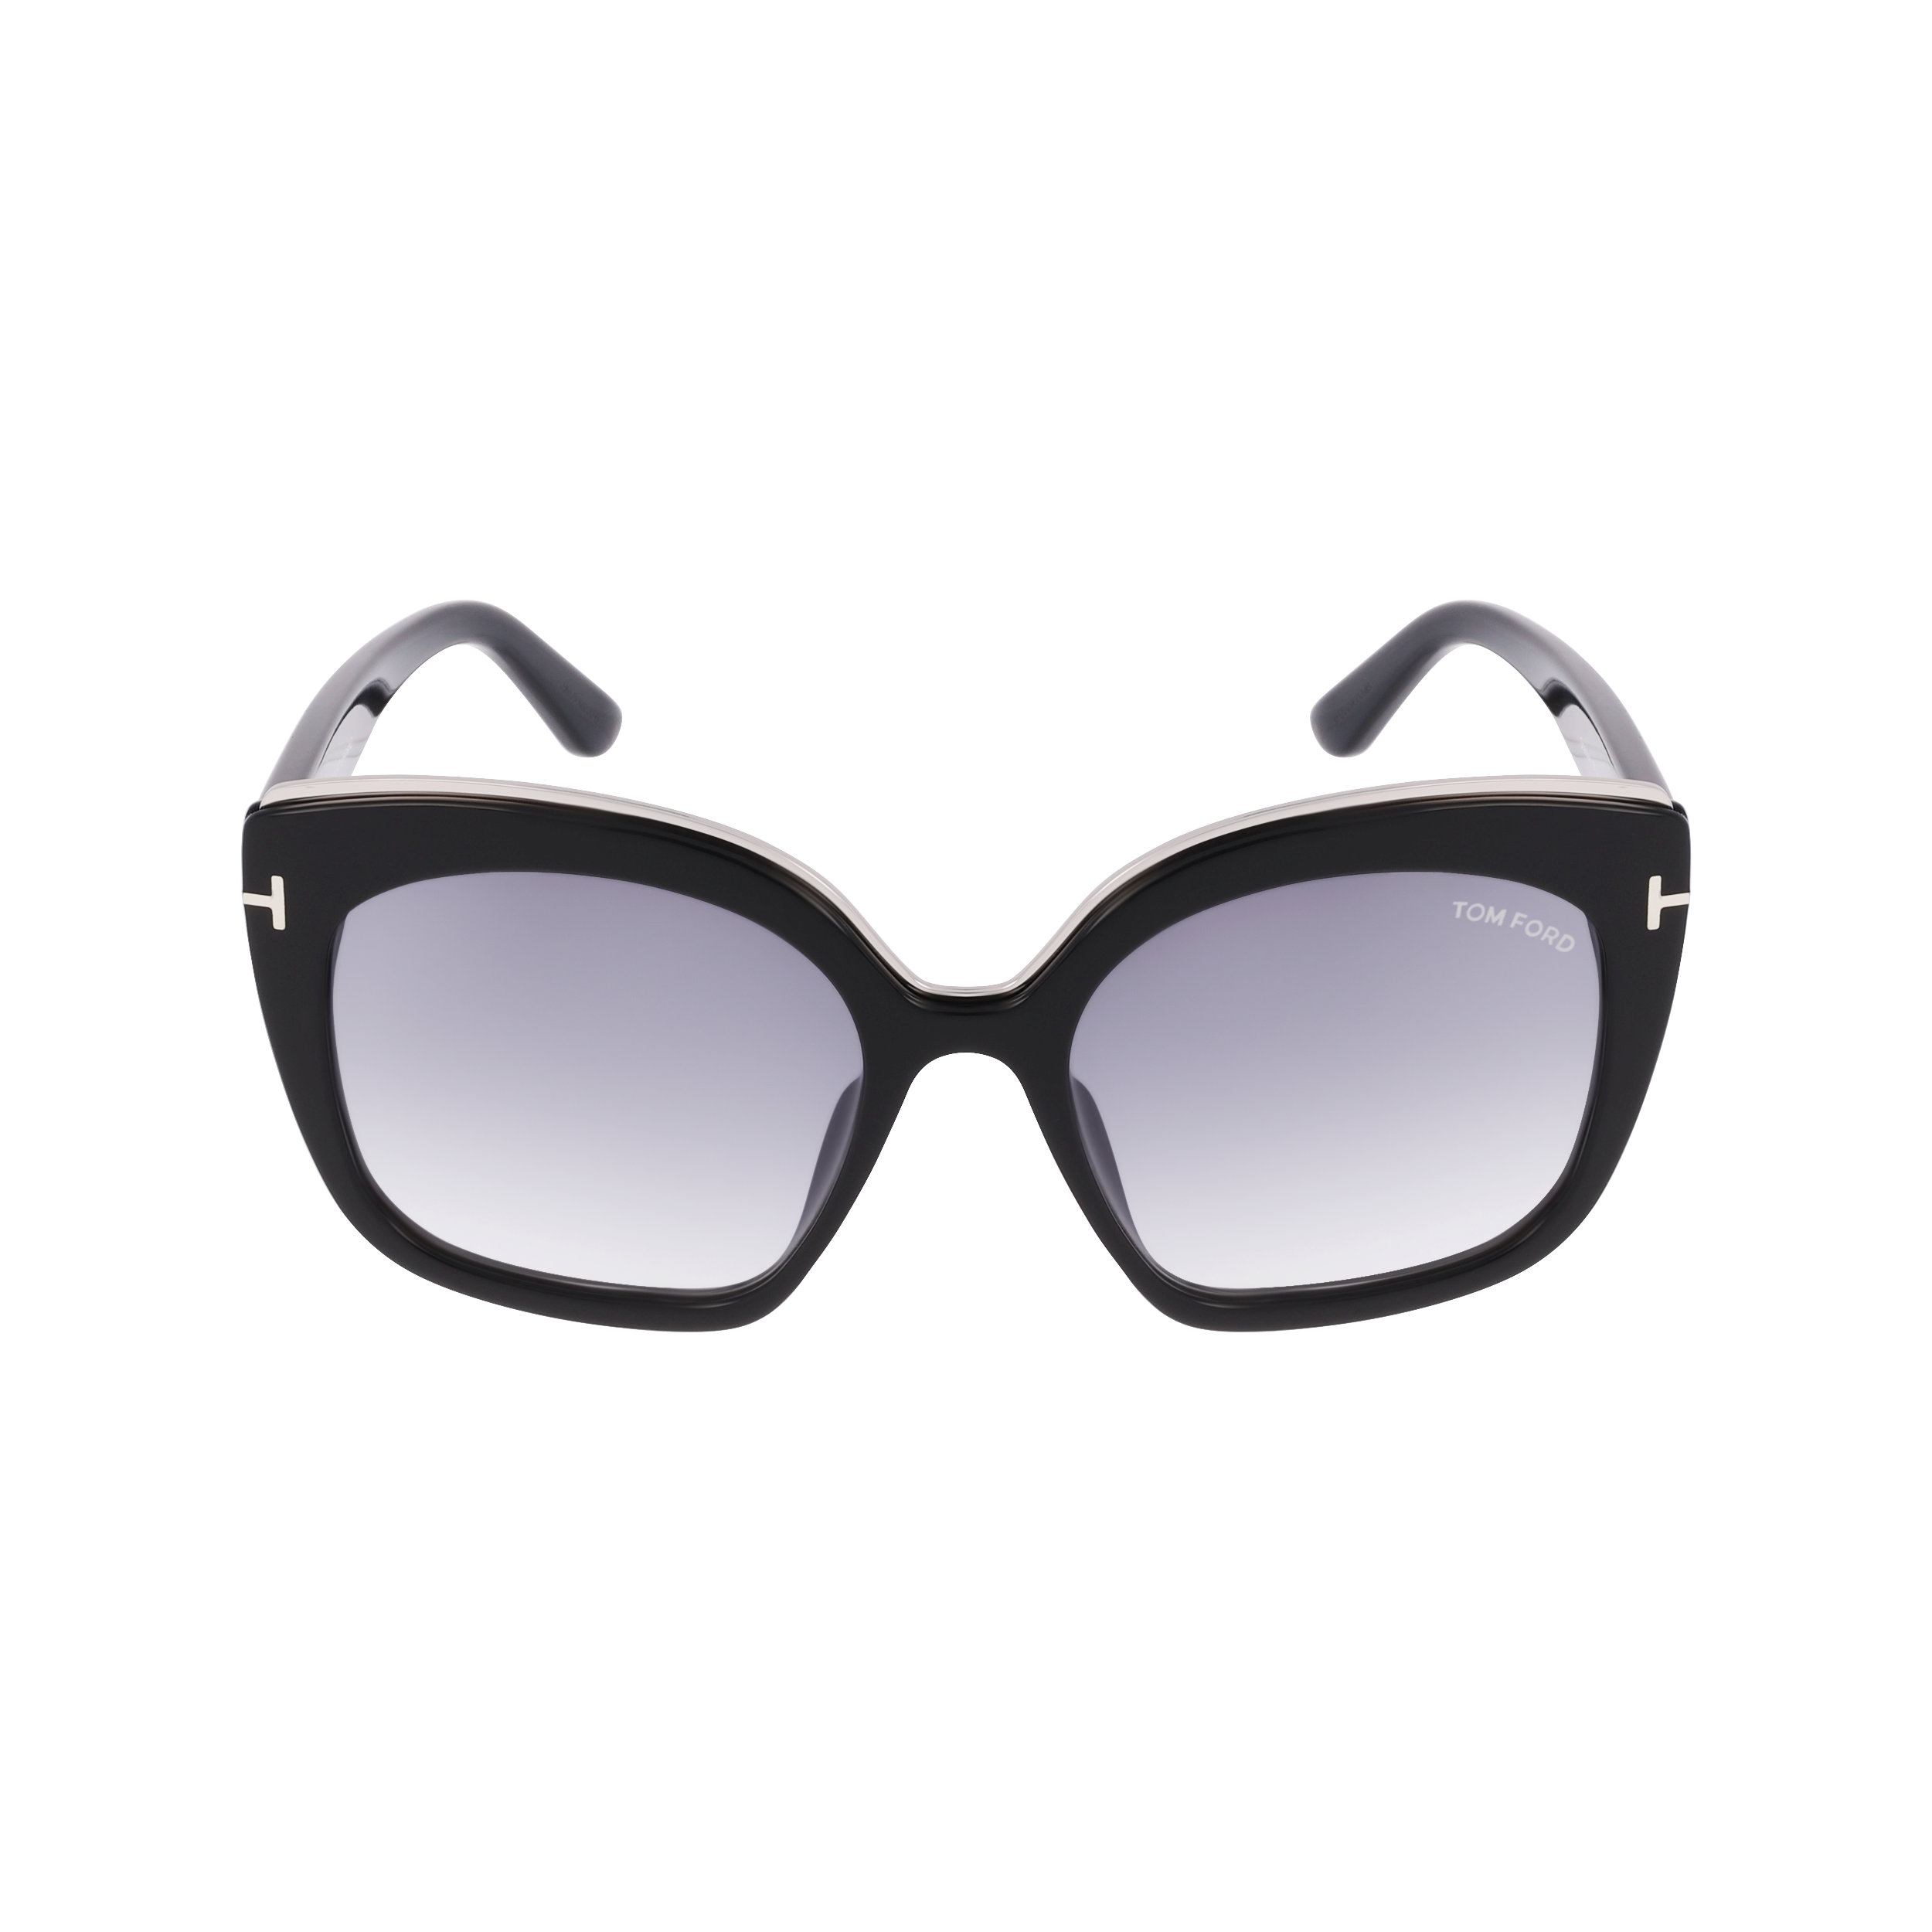 Tom Ford Sunglasses Tom Ford Sunglasses FT0944 01G 55mm Chantalle Eyeglasses Eyewear UK USA Australia 